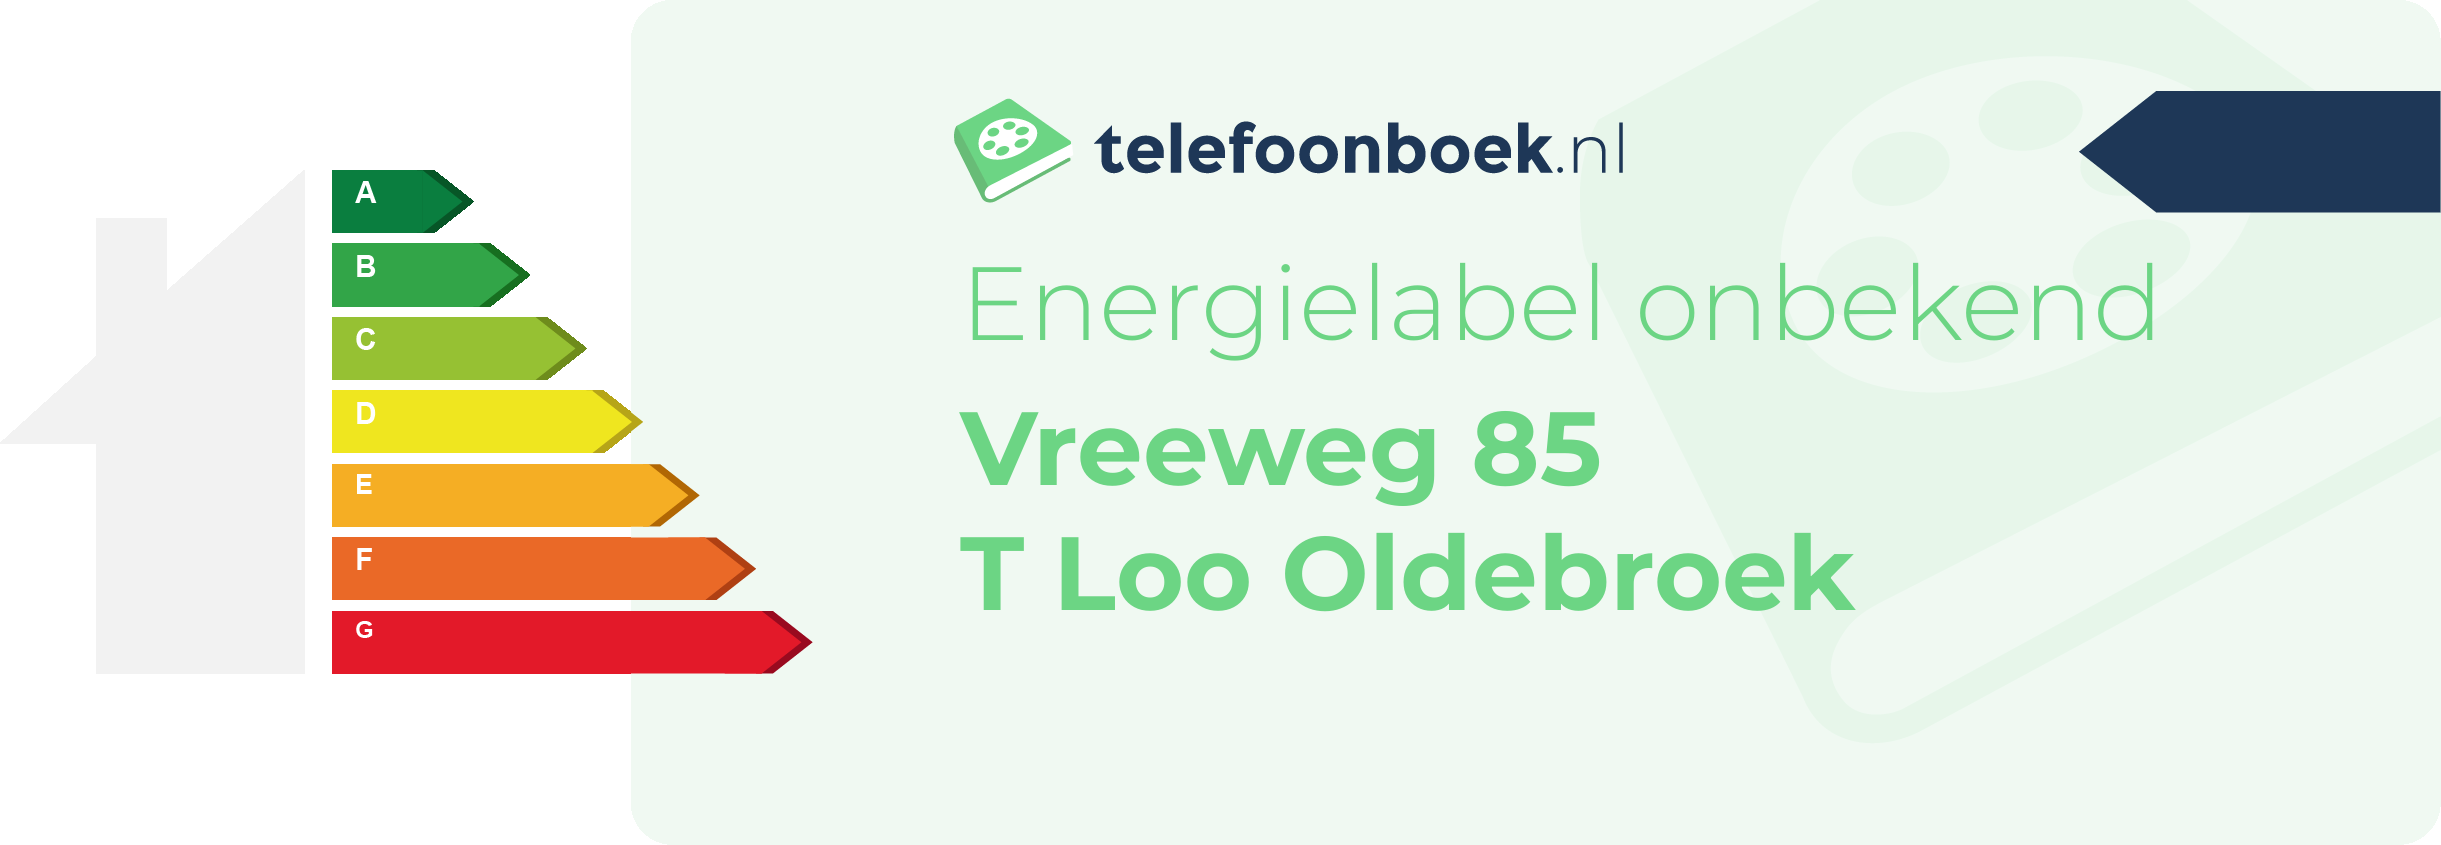 Energielabel Vreeweg 85 T Loo Oldebroek